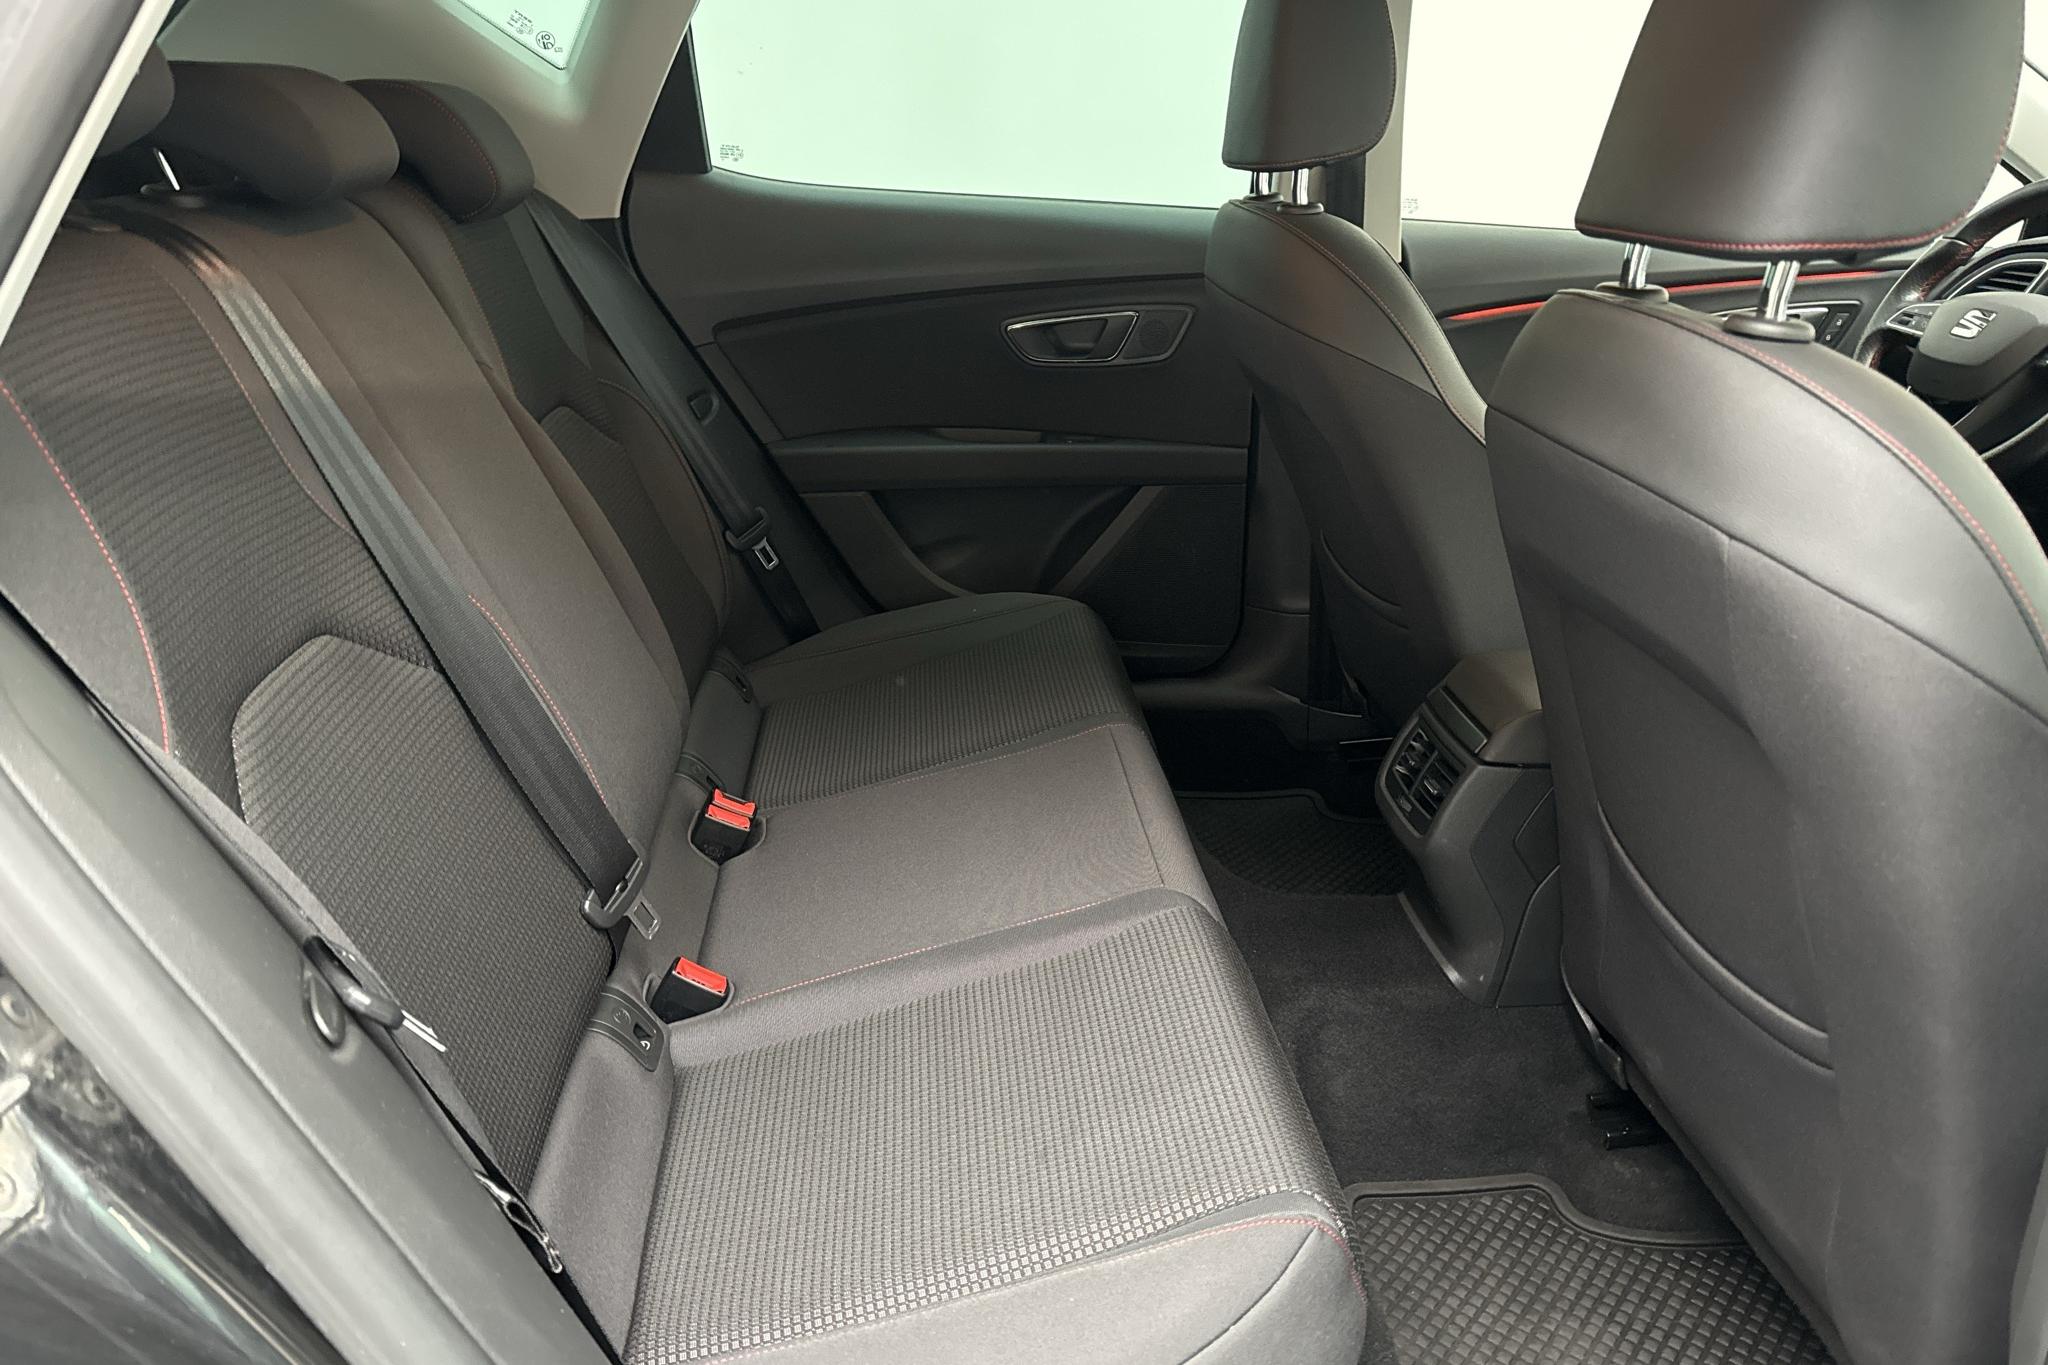 Seat Leon 1.5 TSI 5dr (130hk) - 49 770 km - Manual - black - 2019